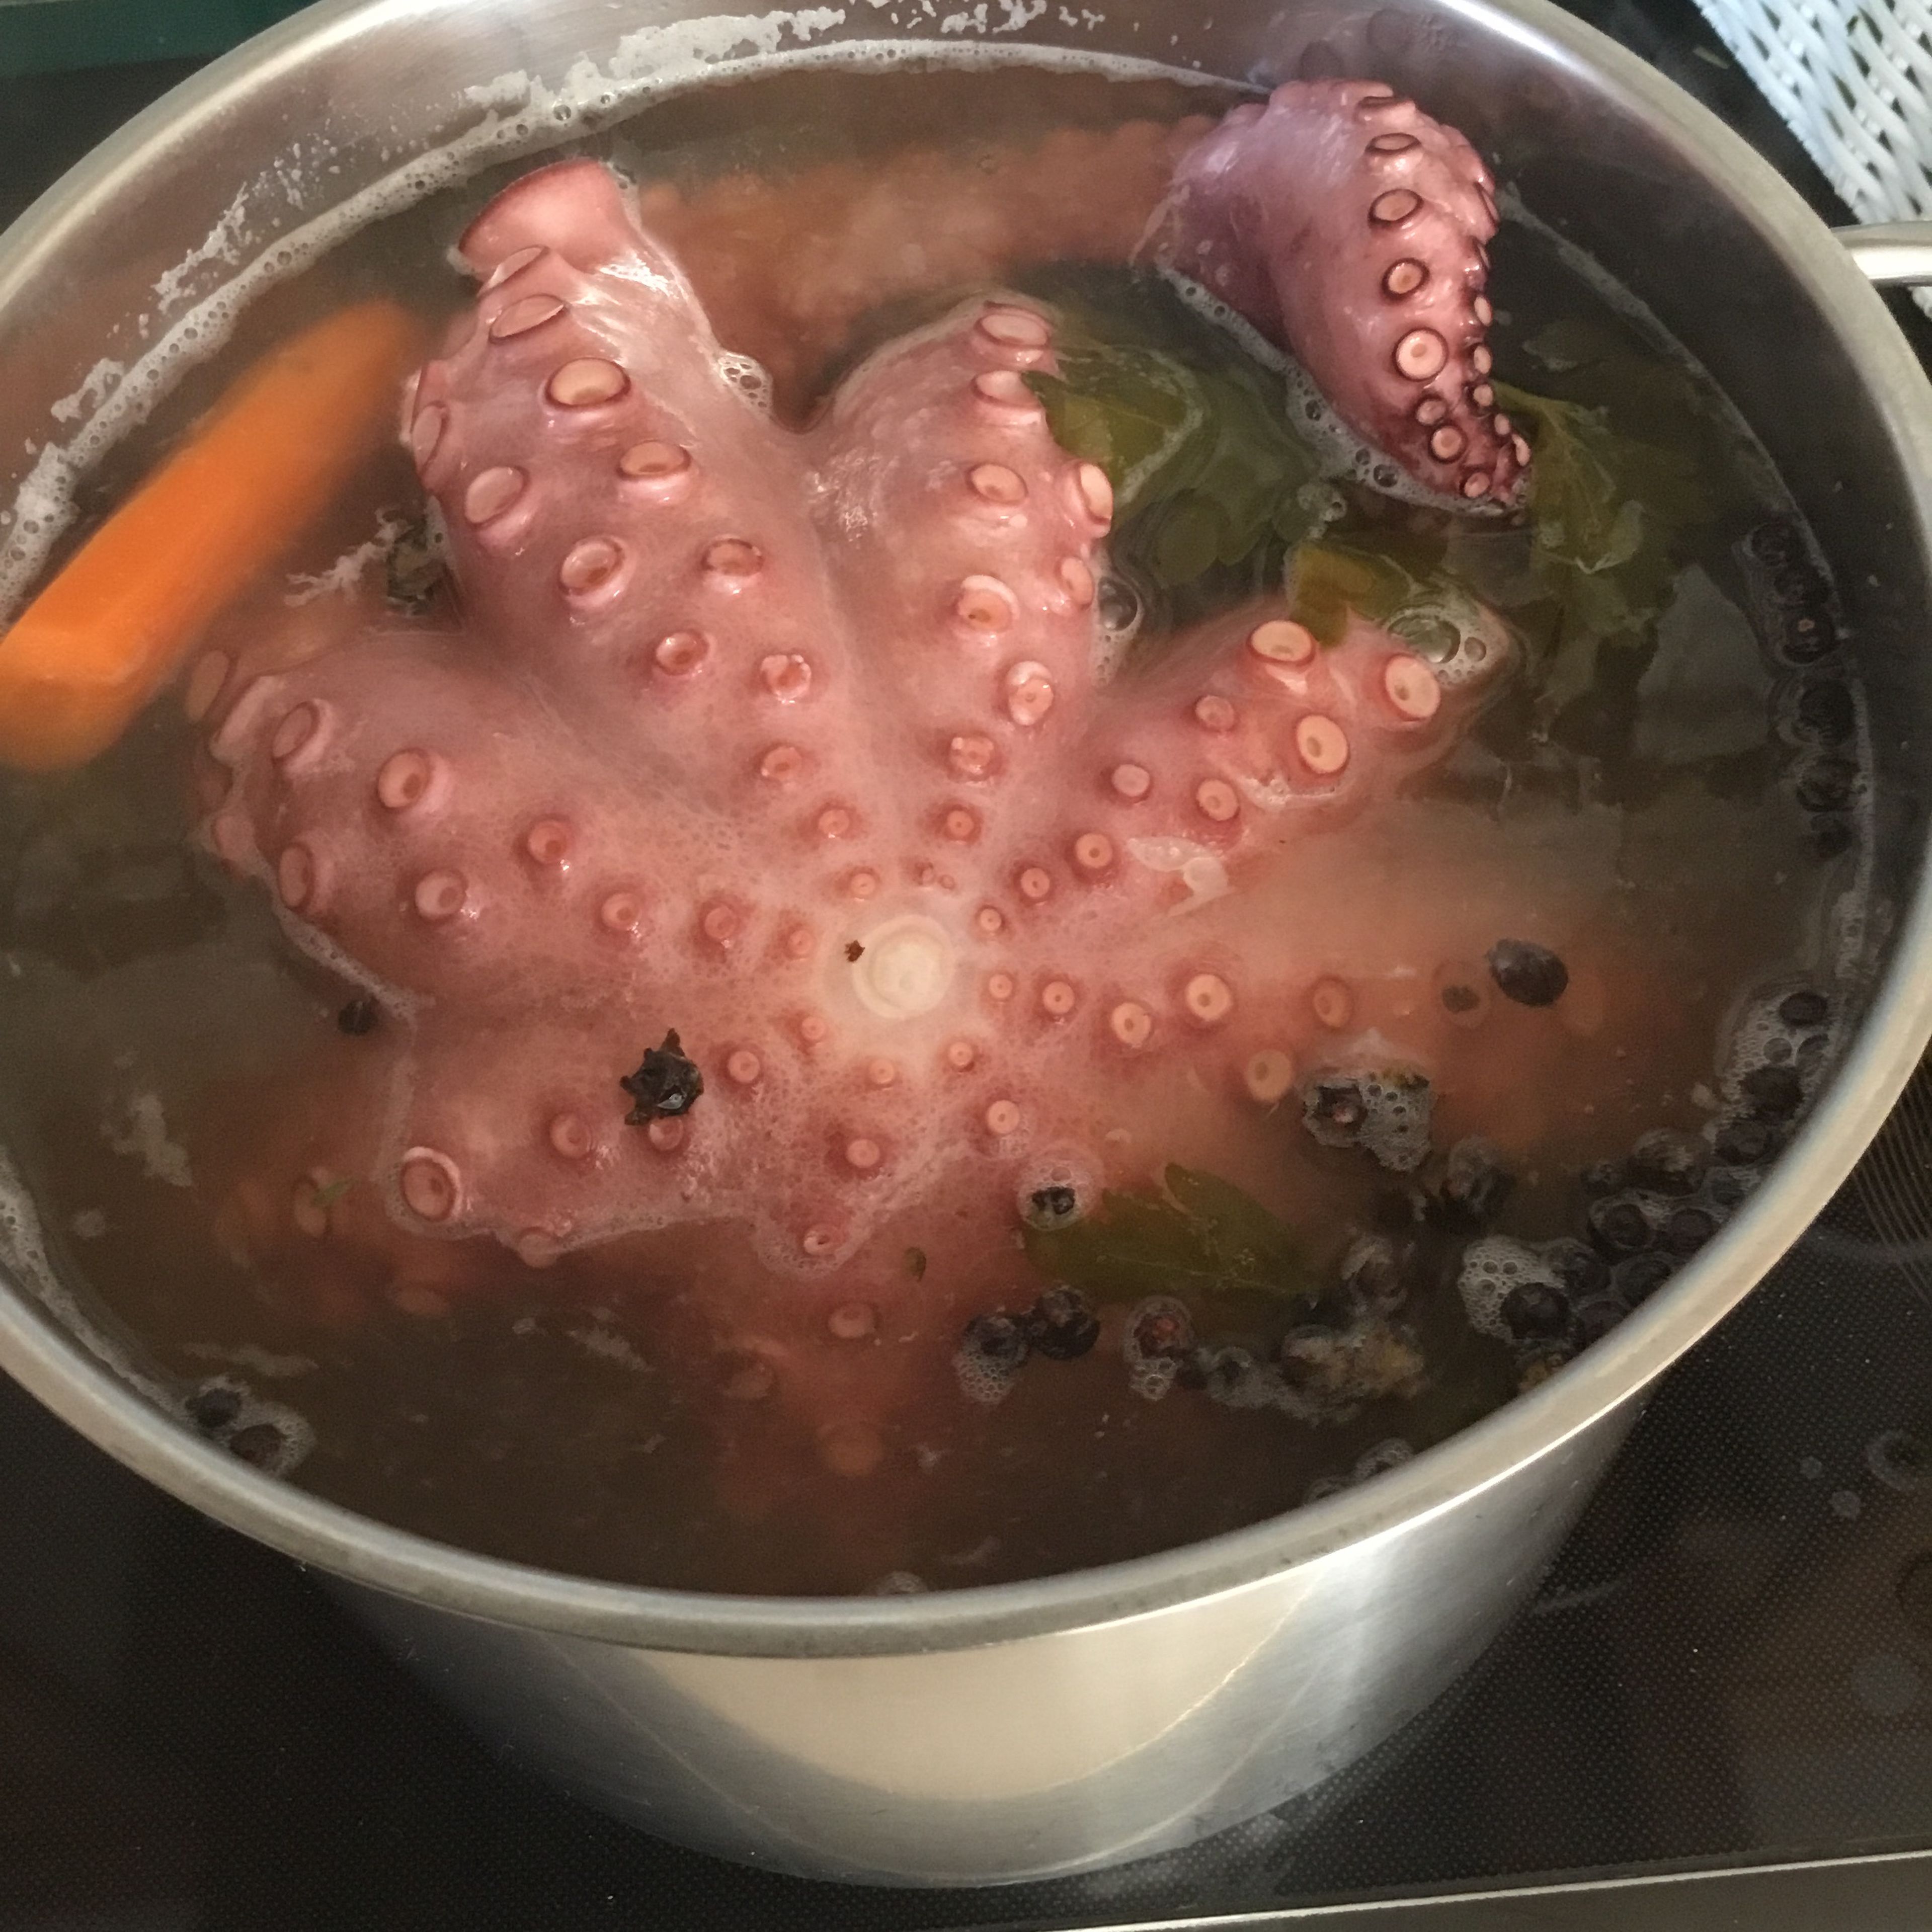 Den Octopus kurz aufkochen und dann weitersimmern lassen. Wenn er brodelnd gekocht wird, wird er zäh. Die Kochzeit beträgt je nach Größe zwischen 1 1/4 h und 2 h. Bei diesem ca. 2 kg „Oschi“ habe ich 2 h gebraucht bis er butterweich ist. Ob der Pulpo fertig ist kann man mit einem Zahnstocher oder hölzernen Schaschlikstab testen. Diesen in den Pulpo stecken und wenn er sich ganz leicht wieder rausziehen lässt ist der Pulpo fertig. Ruhig auch am Anfang mal anpiksen, dann merkt man den Unterschied.